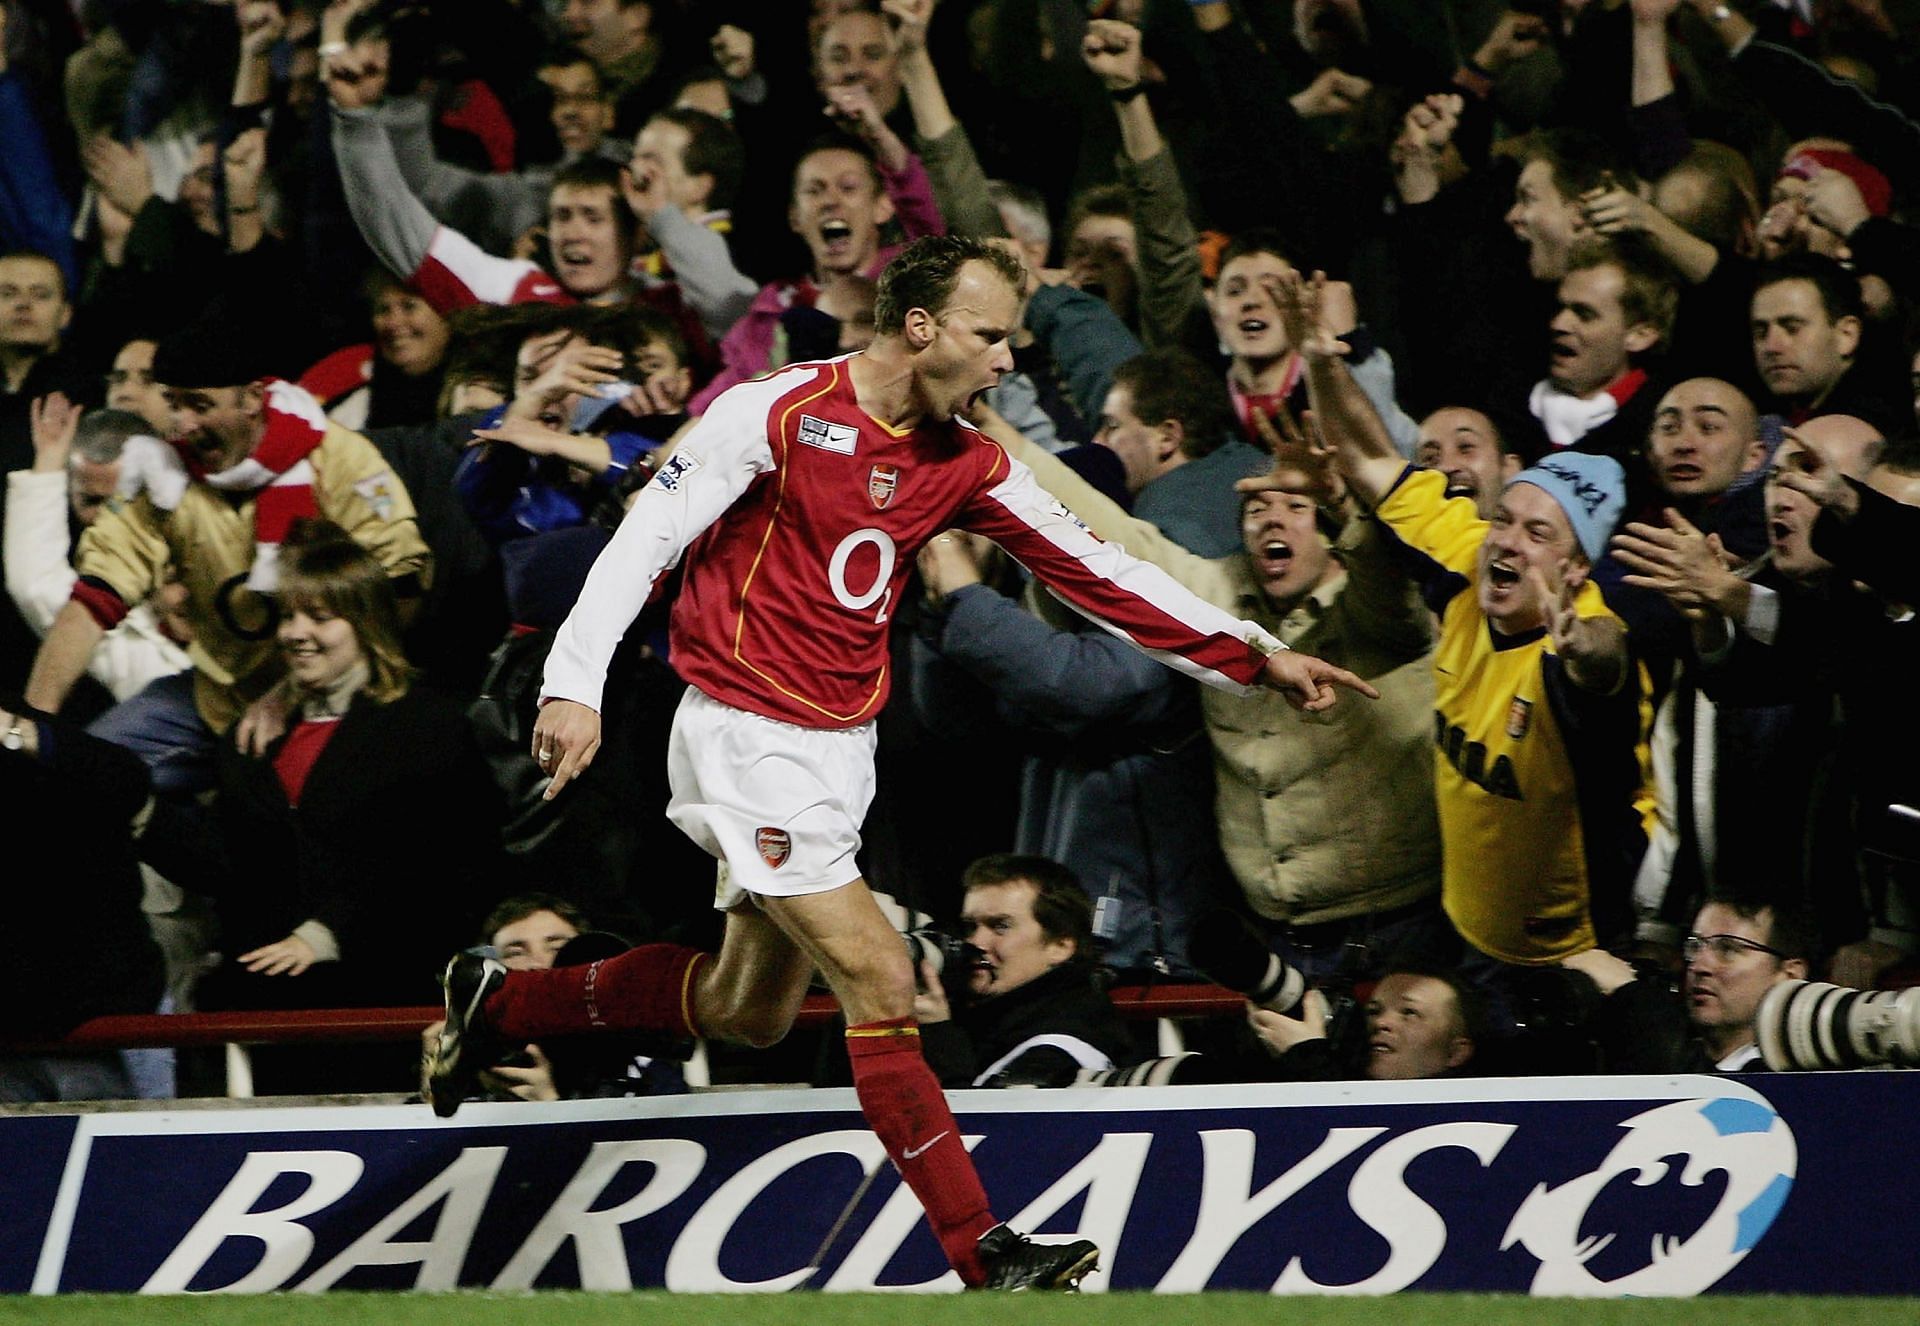 Bergkamp celebrates after scoring against Manchester United